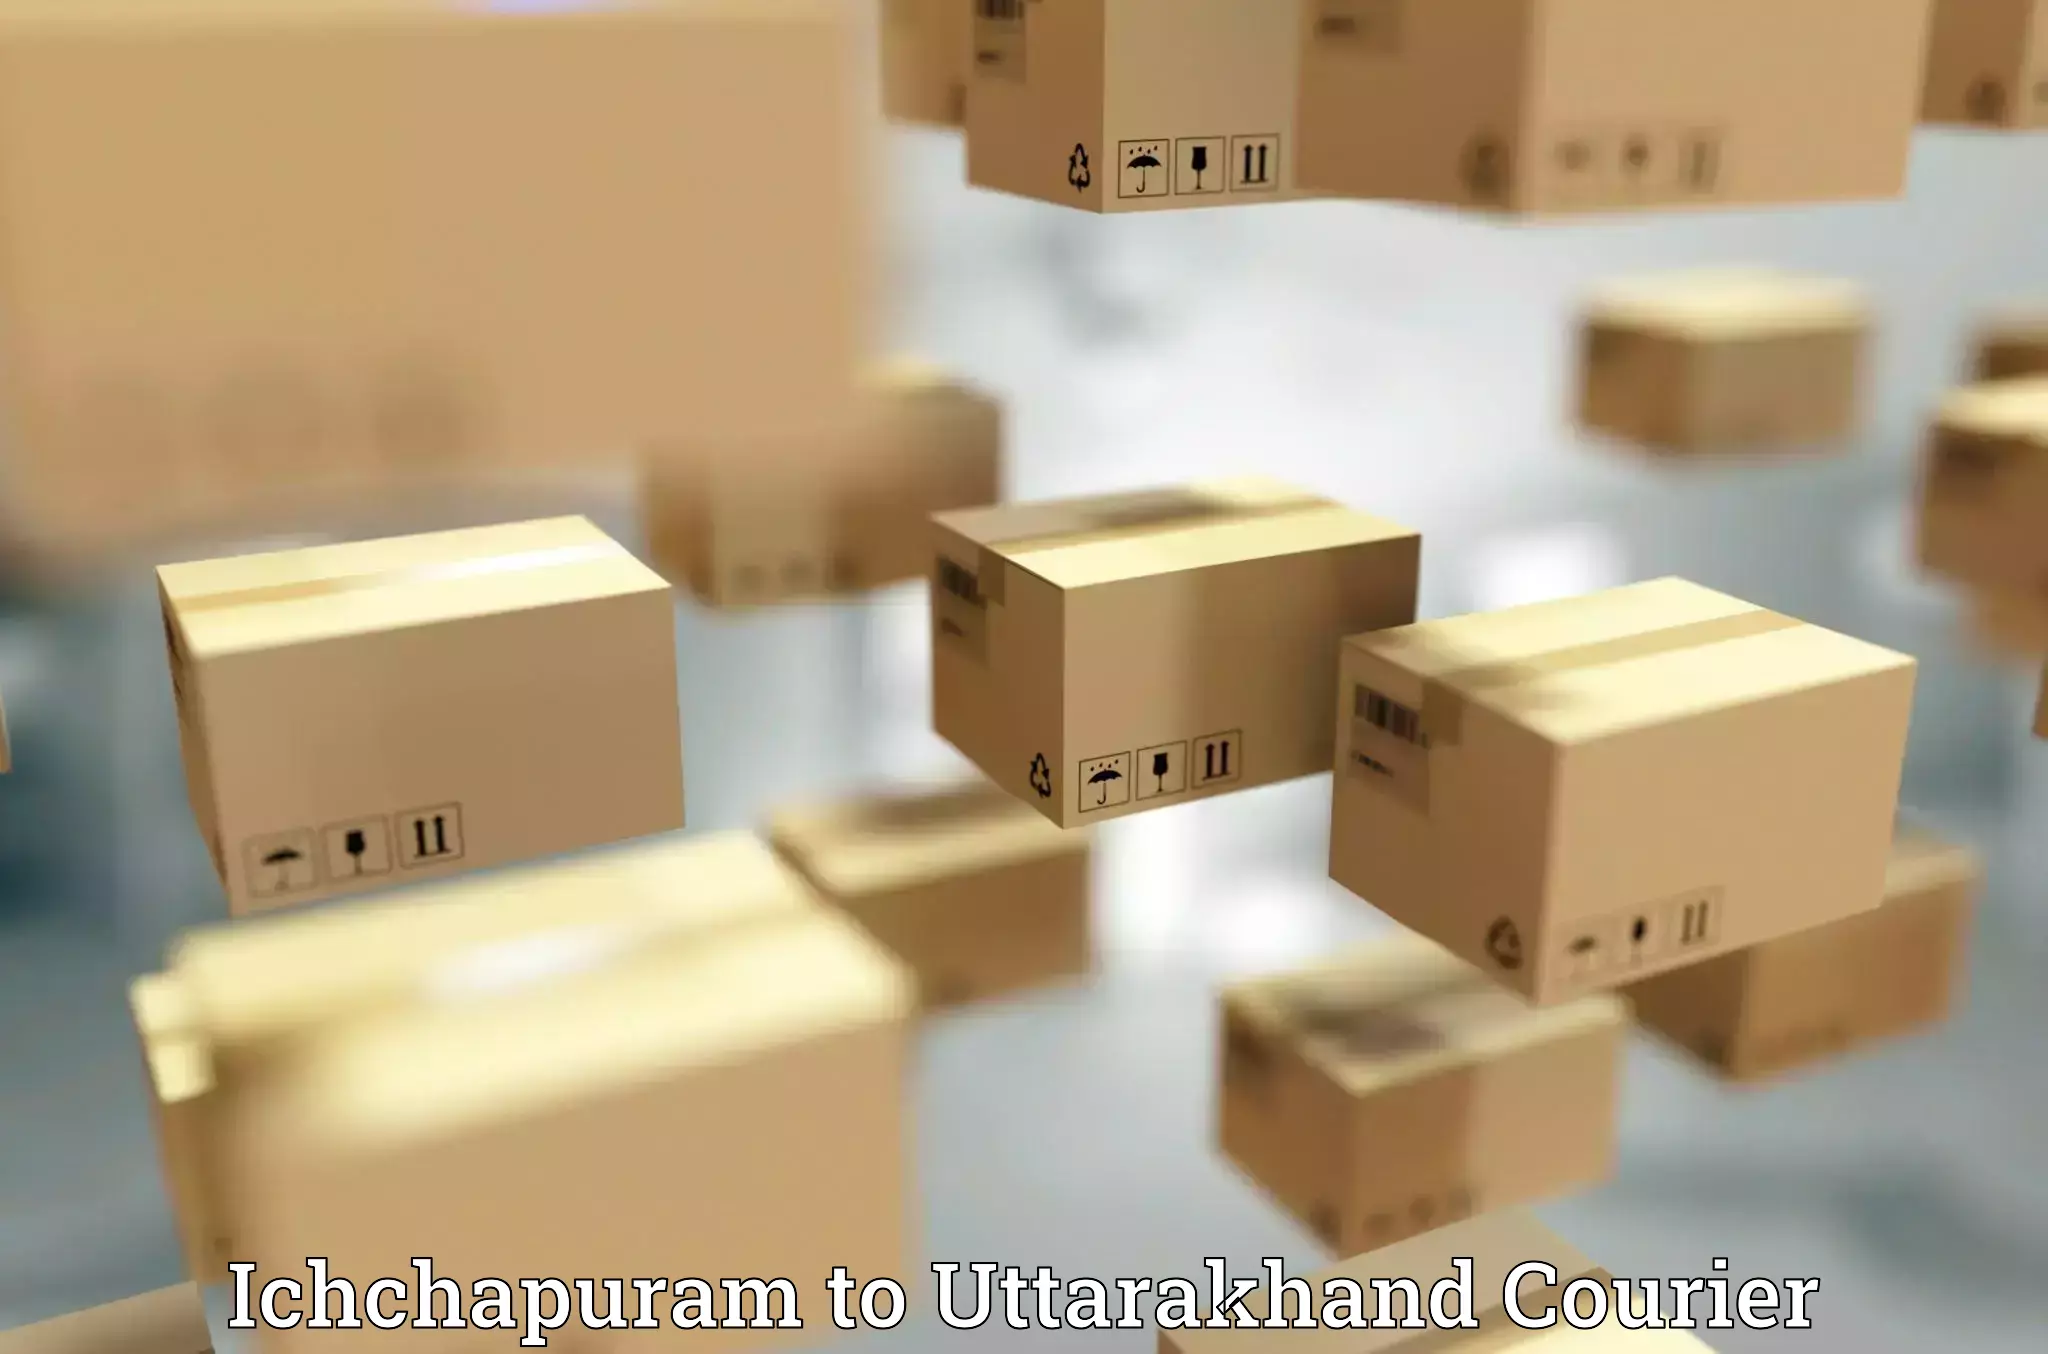 Premium courier solutions Ichchapuram to Uttarakhand